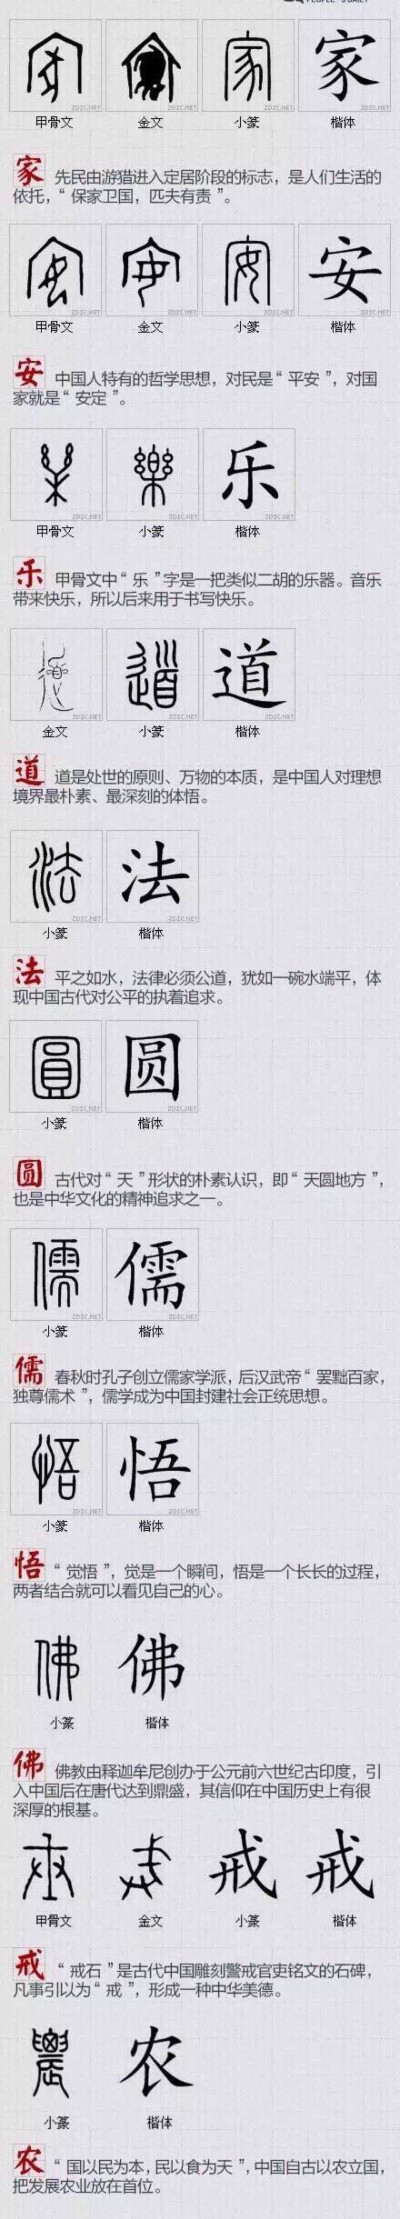 汉字文化圈 堆糖 美图壁纸兴趣社区